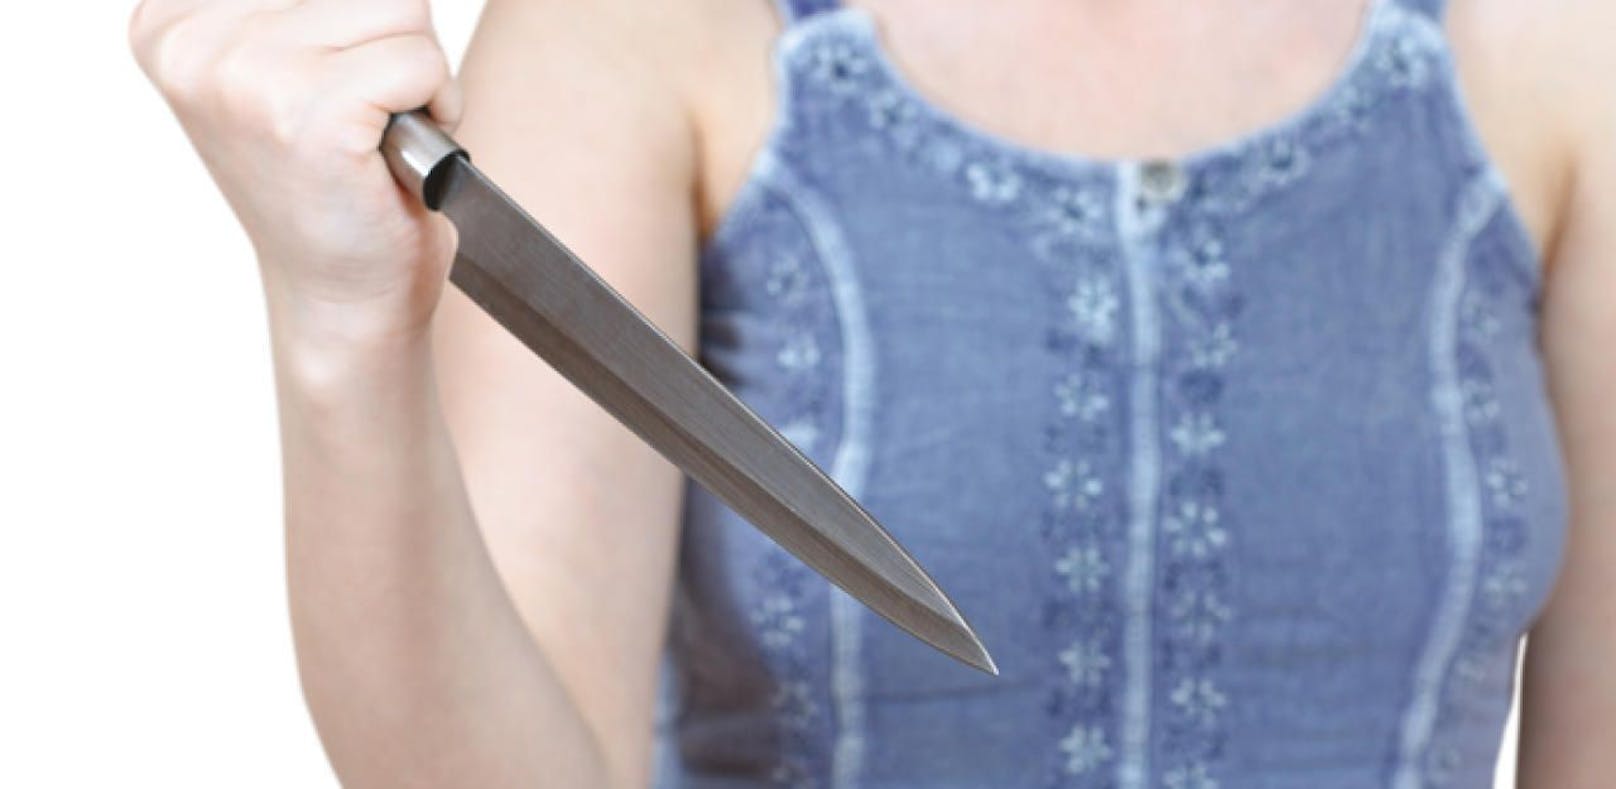 Am Ostersonntag eskalierte ein Streit eines Paar. Eine 22-Jährige stach ihrem Lebensgefährten mit dem Küchenmesser in den Rücken. (Symbolbild).